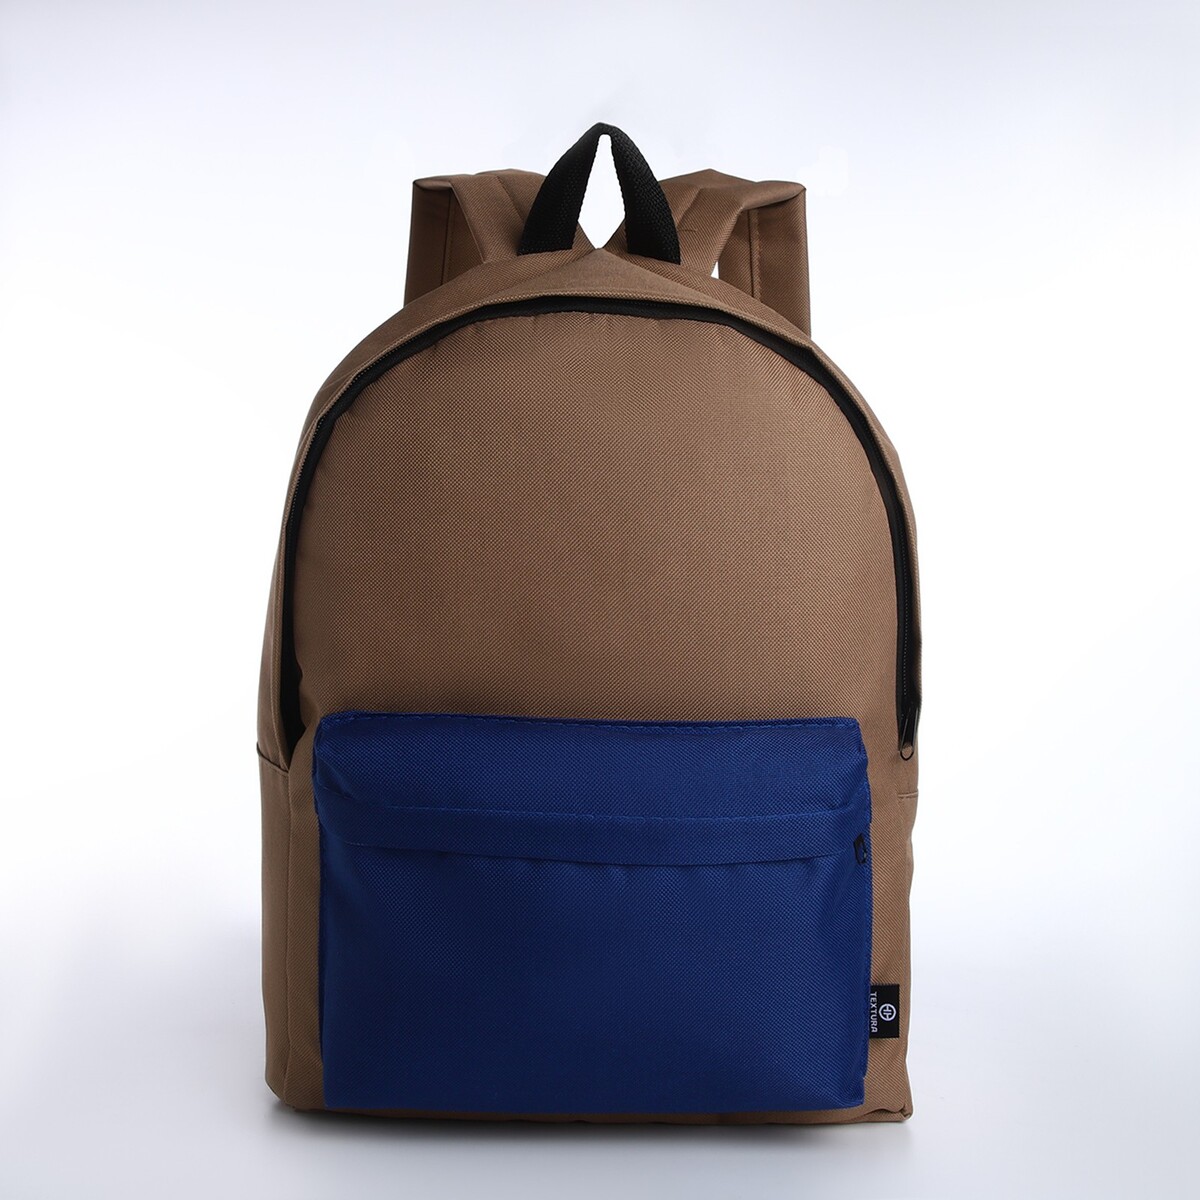 Спортивный рюкзак из текстиля на молнии, textura, 20 литров, цвет бежевый/синий